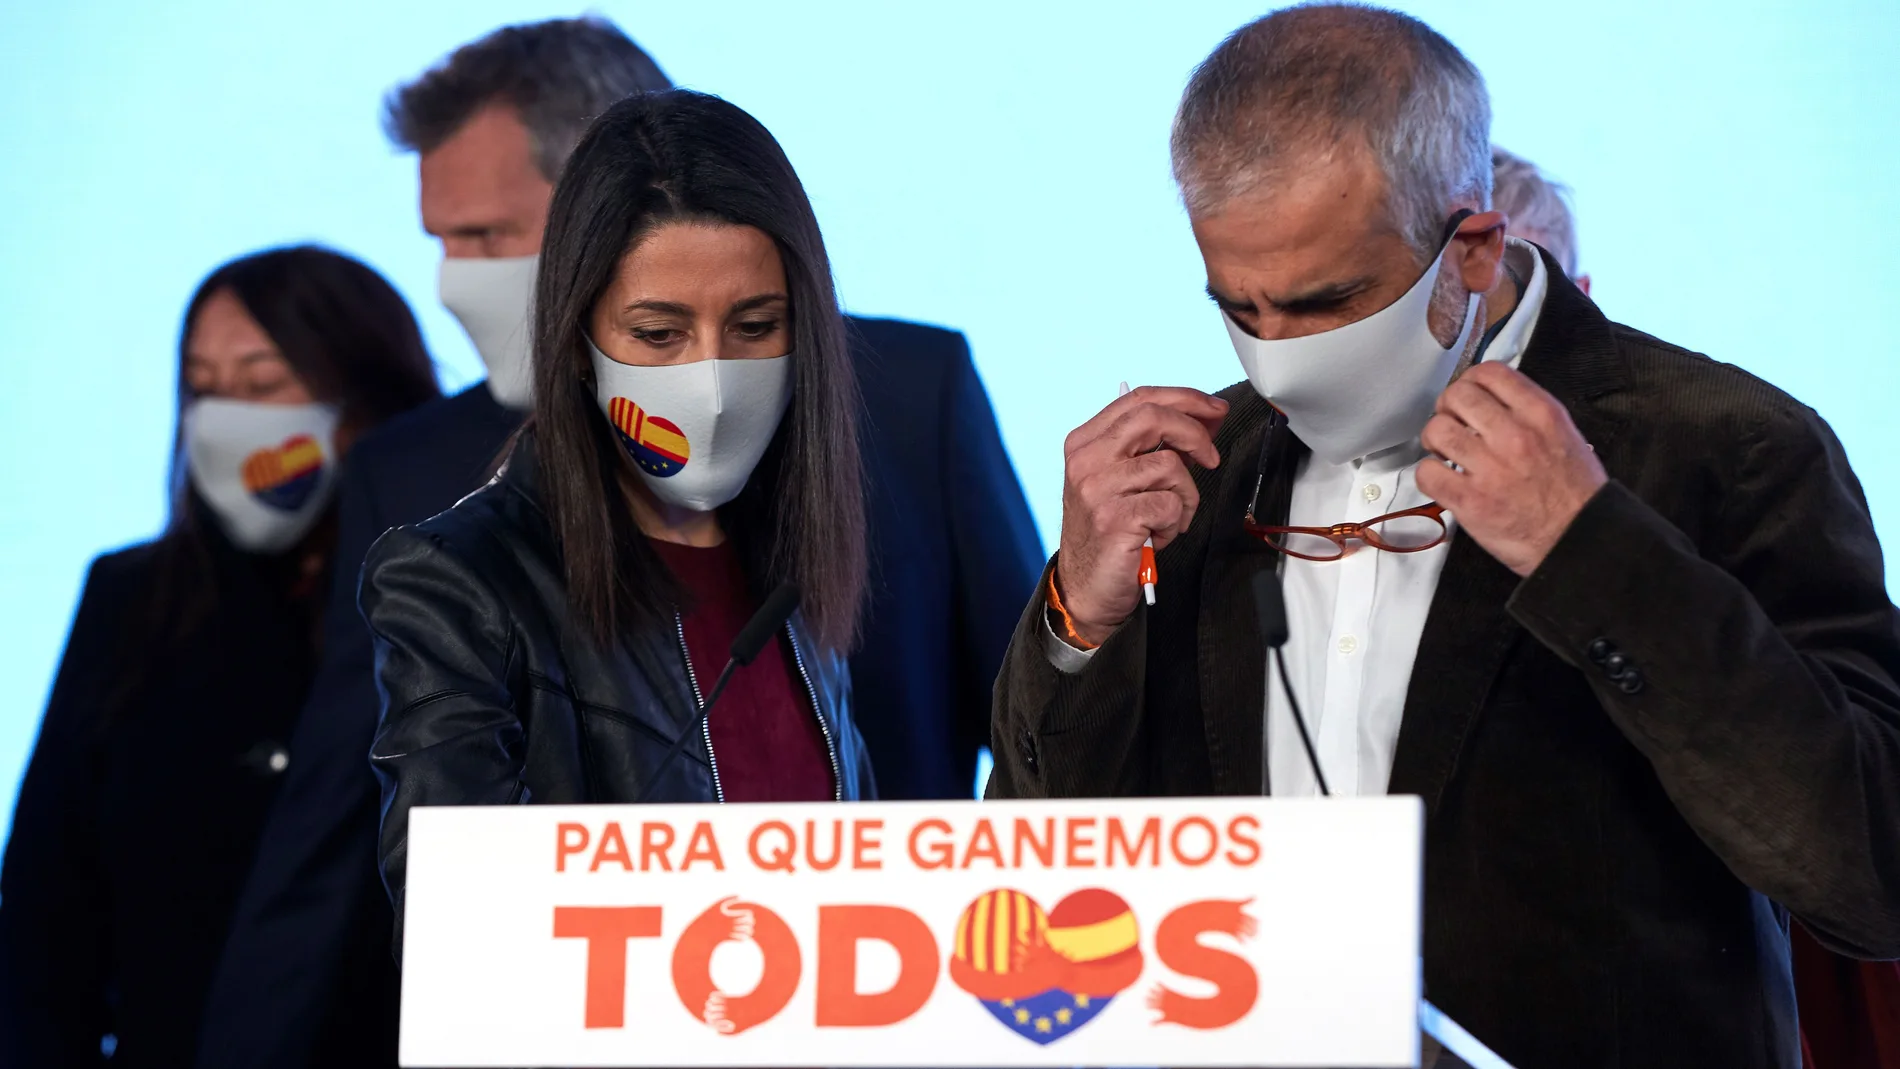 El candidato a la presidencia de la Generalitat por Ciudadanos Carlos Carrizosa y la presidenta del partido Inés Arrimadas comparecen para valorar los resultados electorales, hoy domingo en Barcelona.